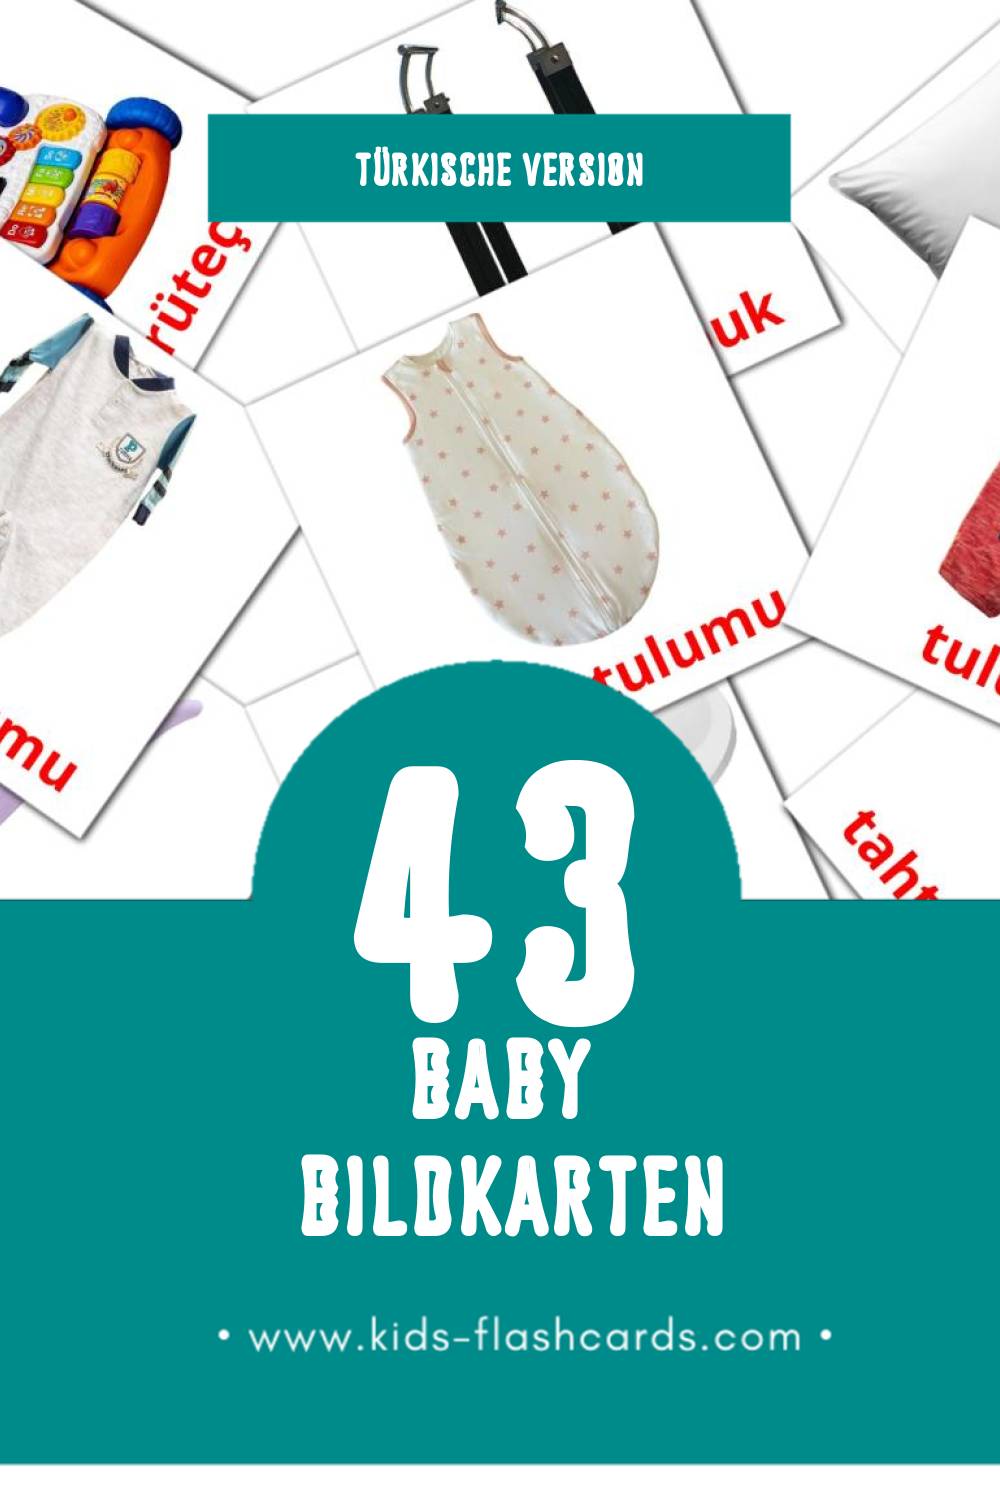 Visual Bebek Flashcards für Kleinkinder (43 Karten in Türkisch)